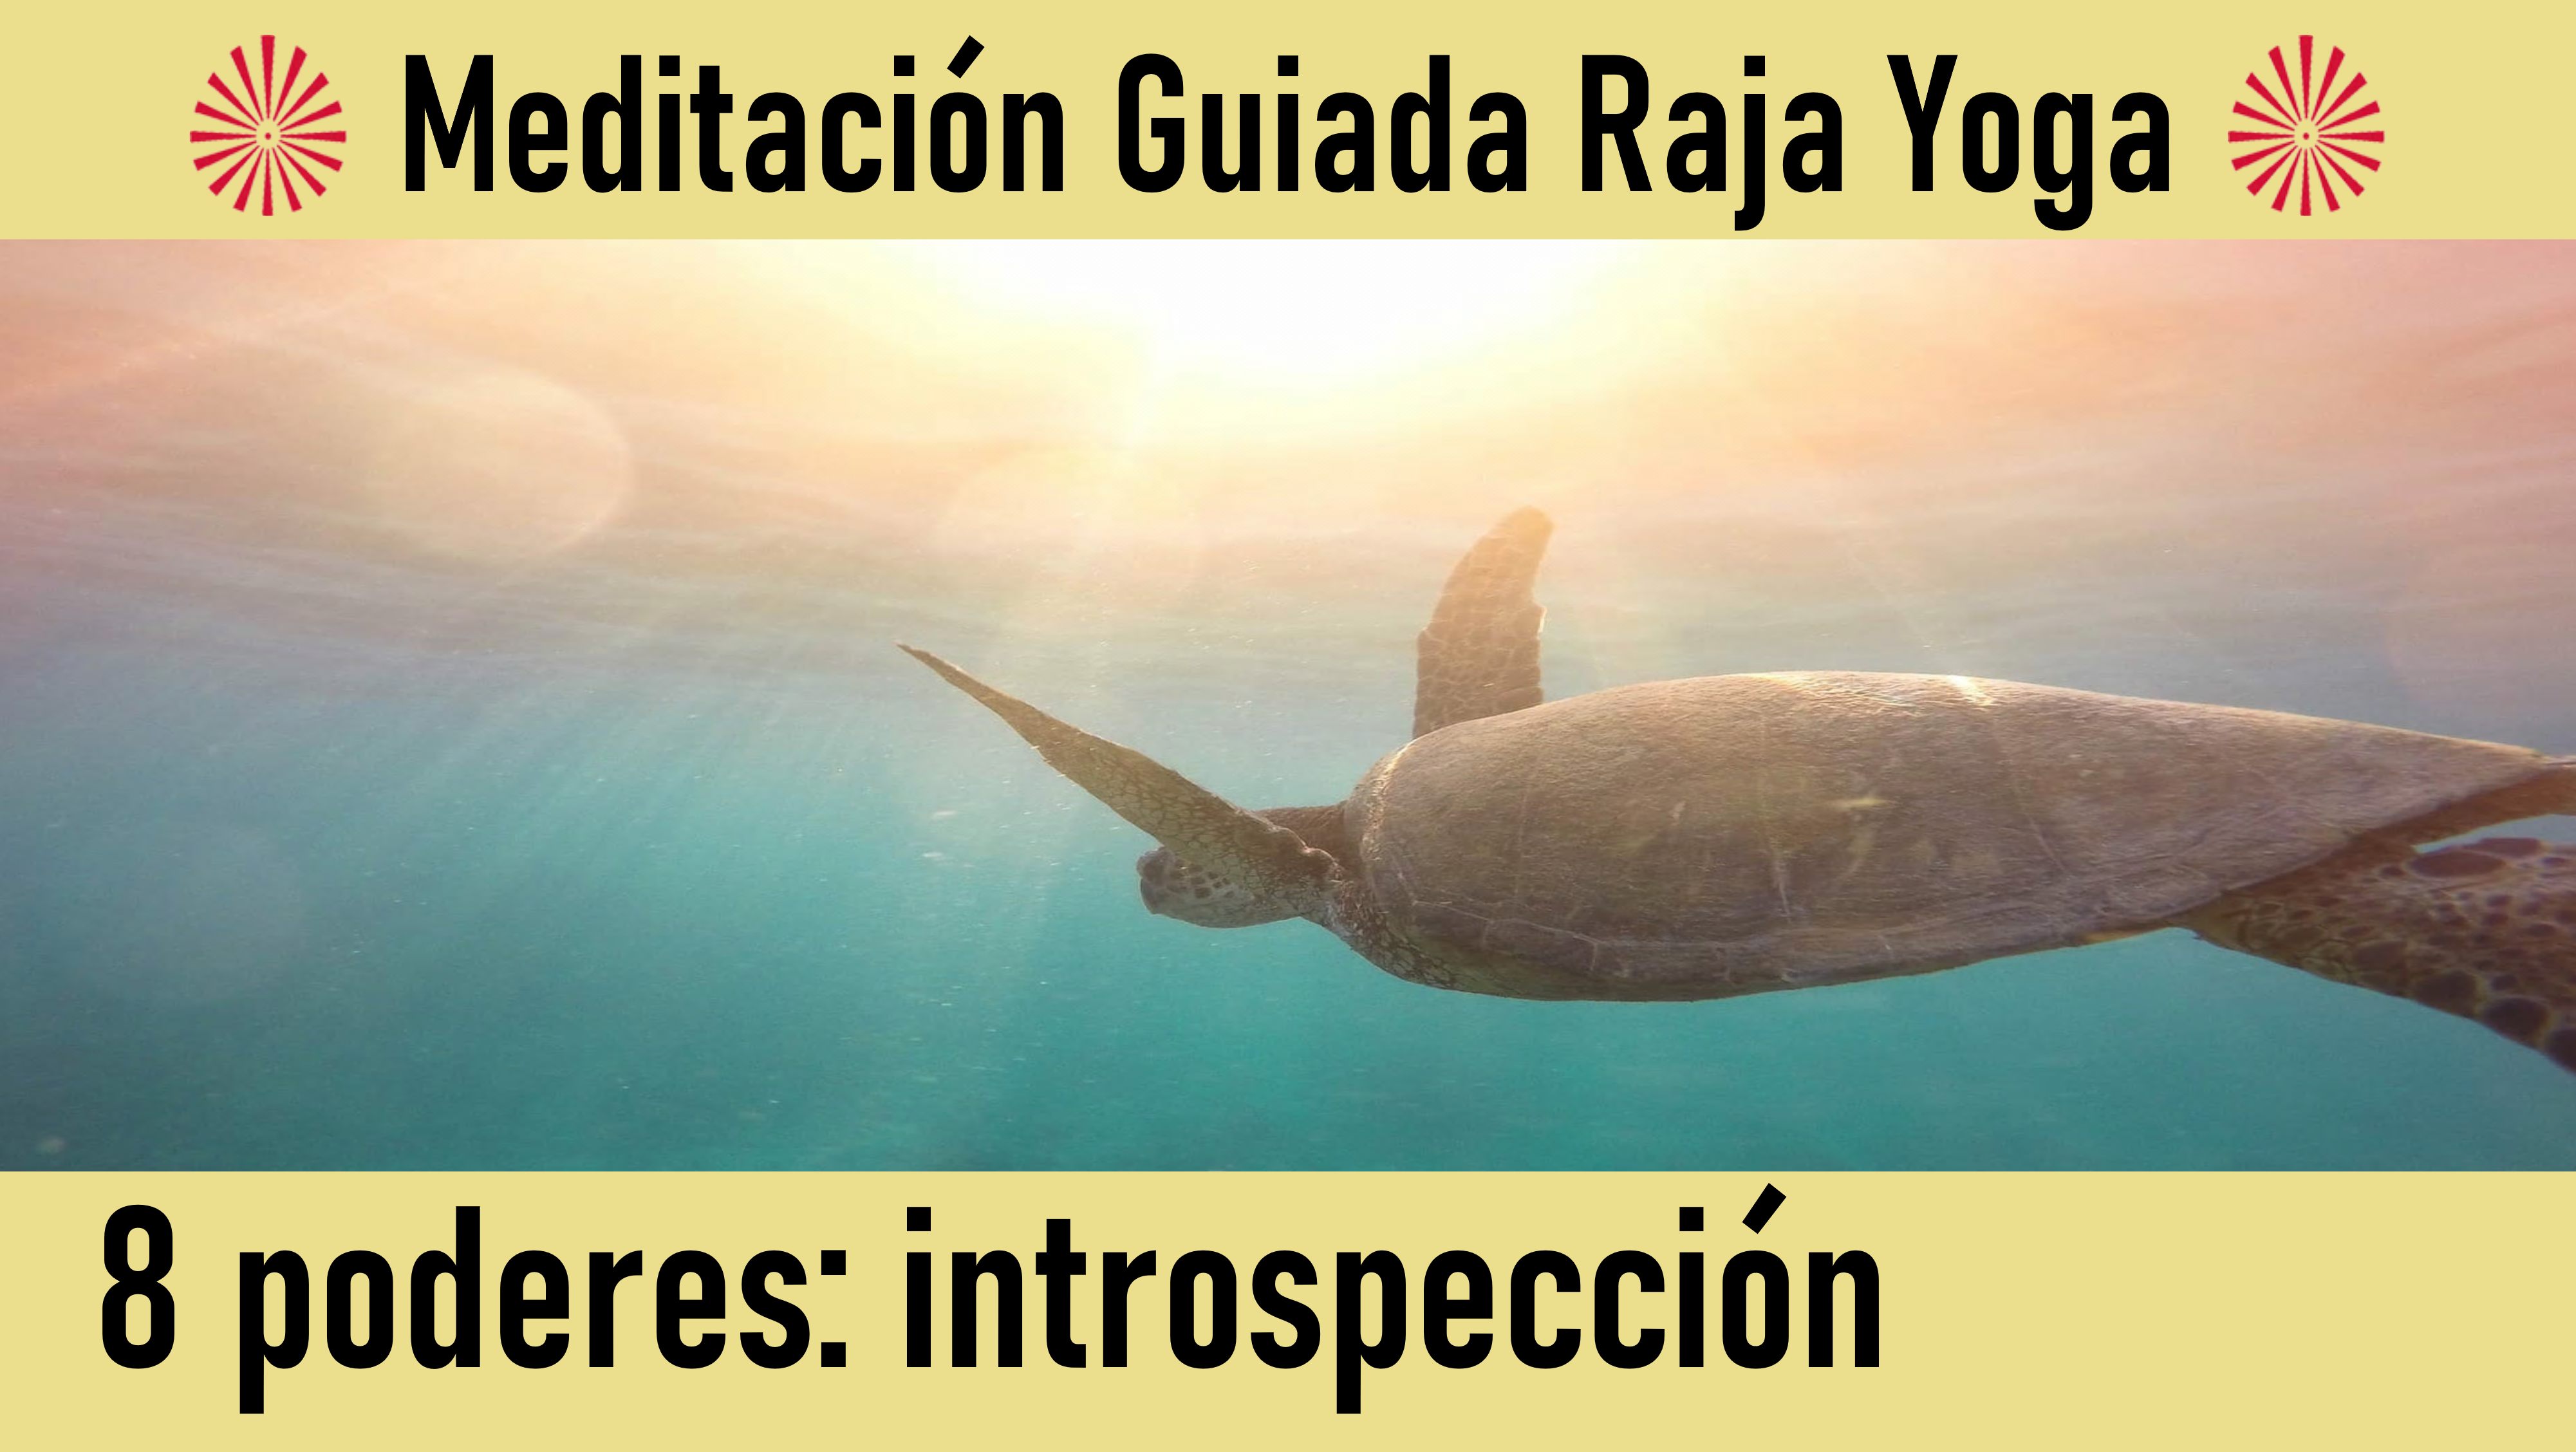 Meditación Raja Yoga: El poder de la introspección (9 Junio 2020) On-line desde Canarias